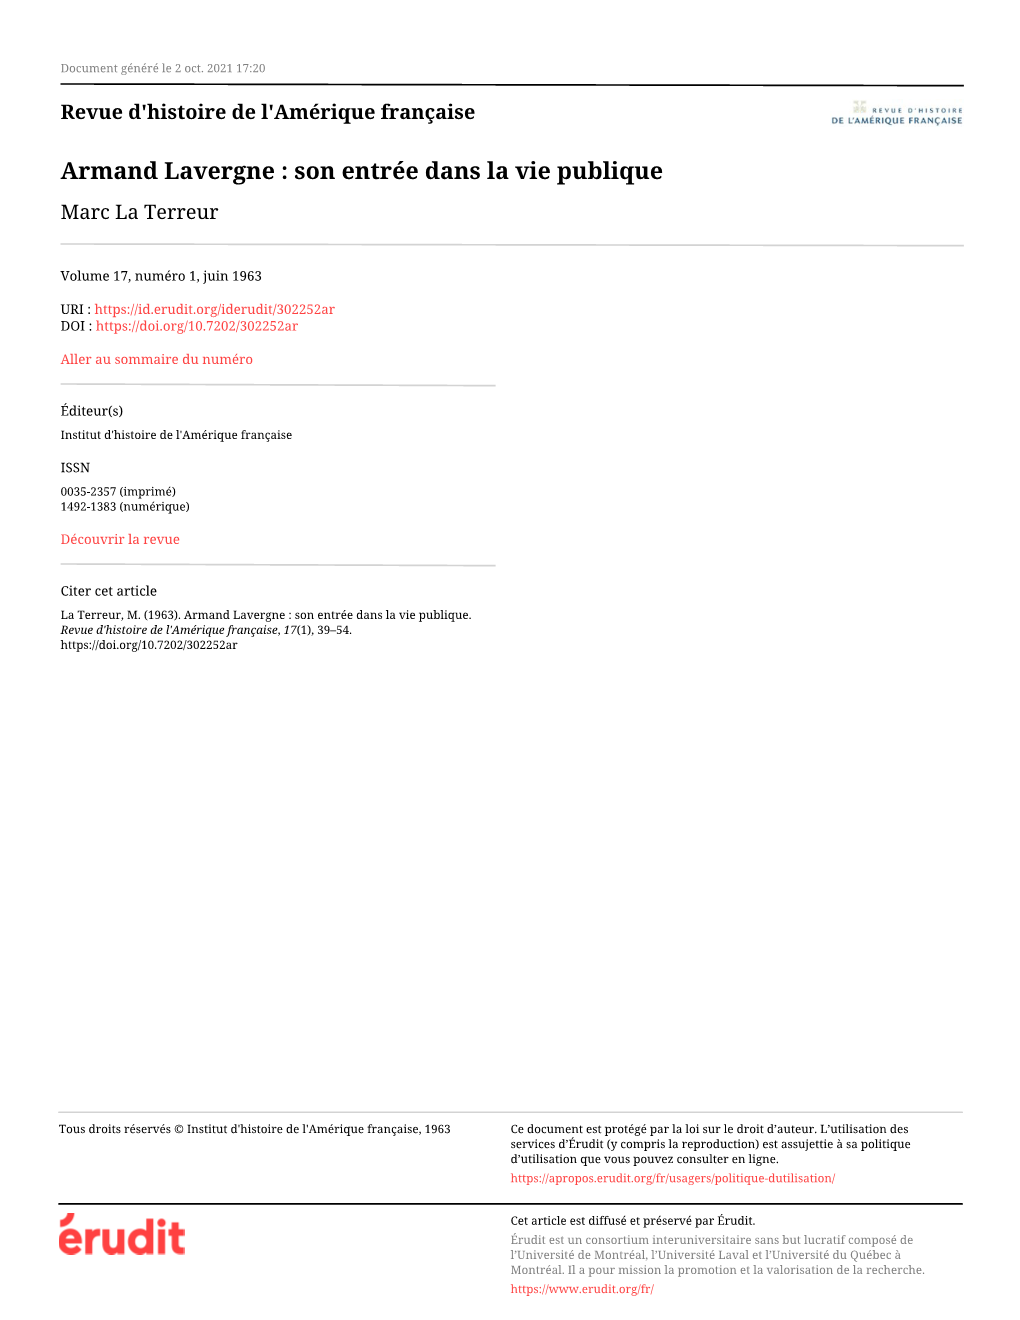 Armand Lavergne : Son Entrée Dans La Vie Publique Marc La Terreur